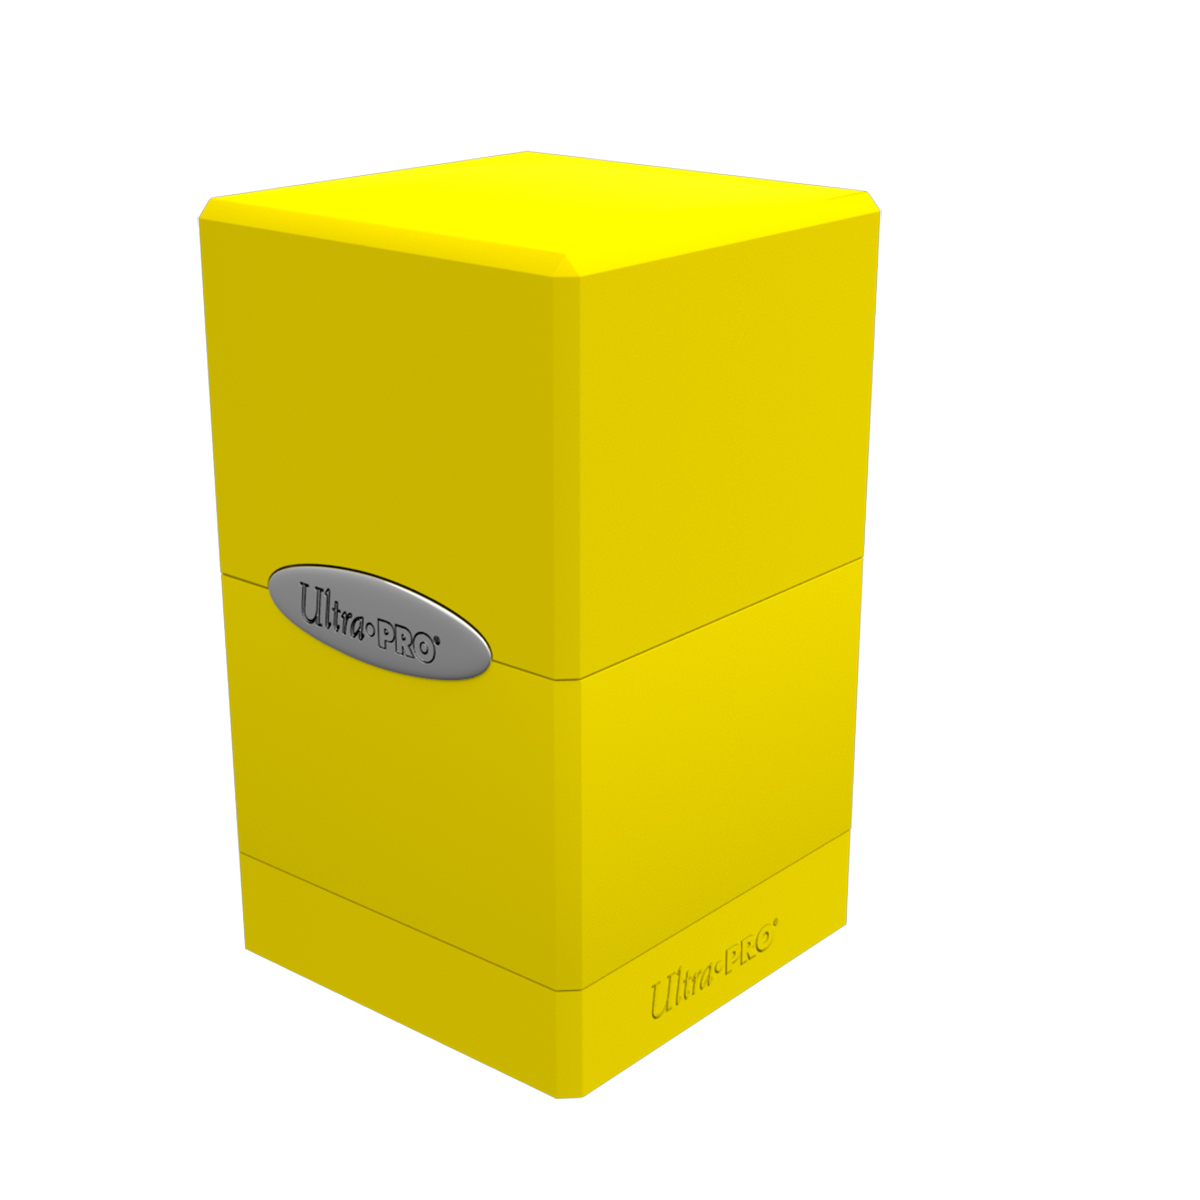 Коробочка Ultra Pro Satin Tower Lemon Yellow для карт MTG, Pokemon коробочка card pro commander box для карт mtg pokemon yellow grey